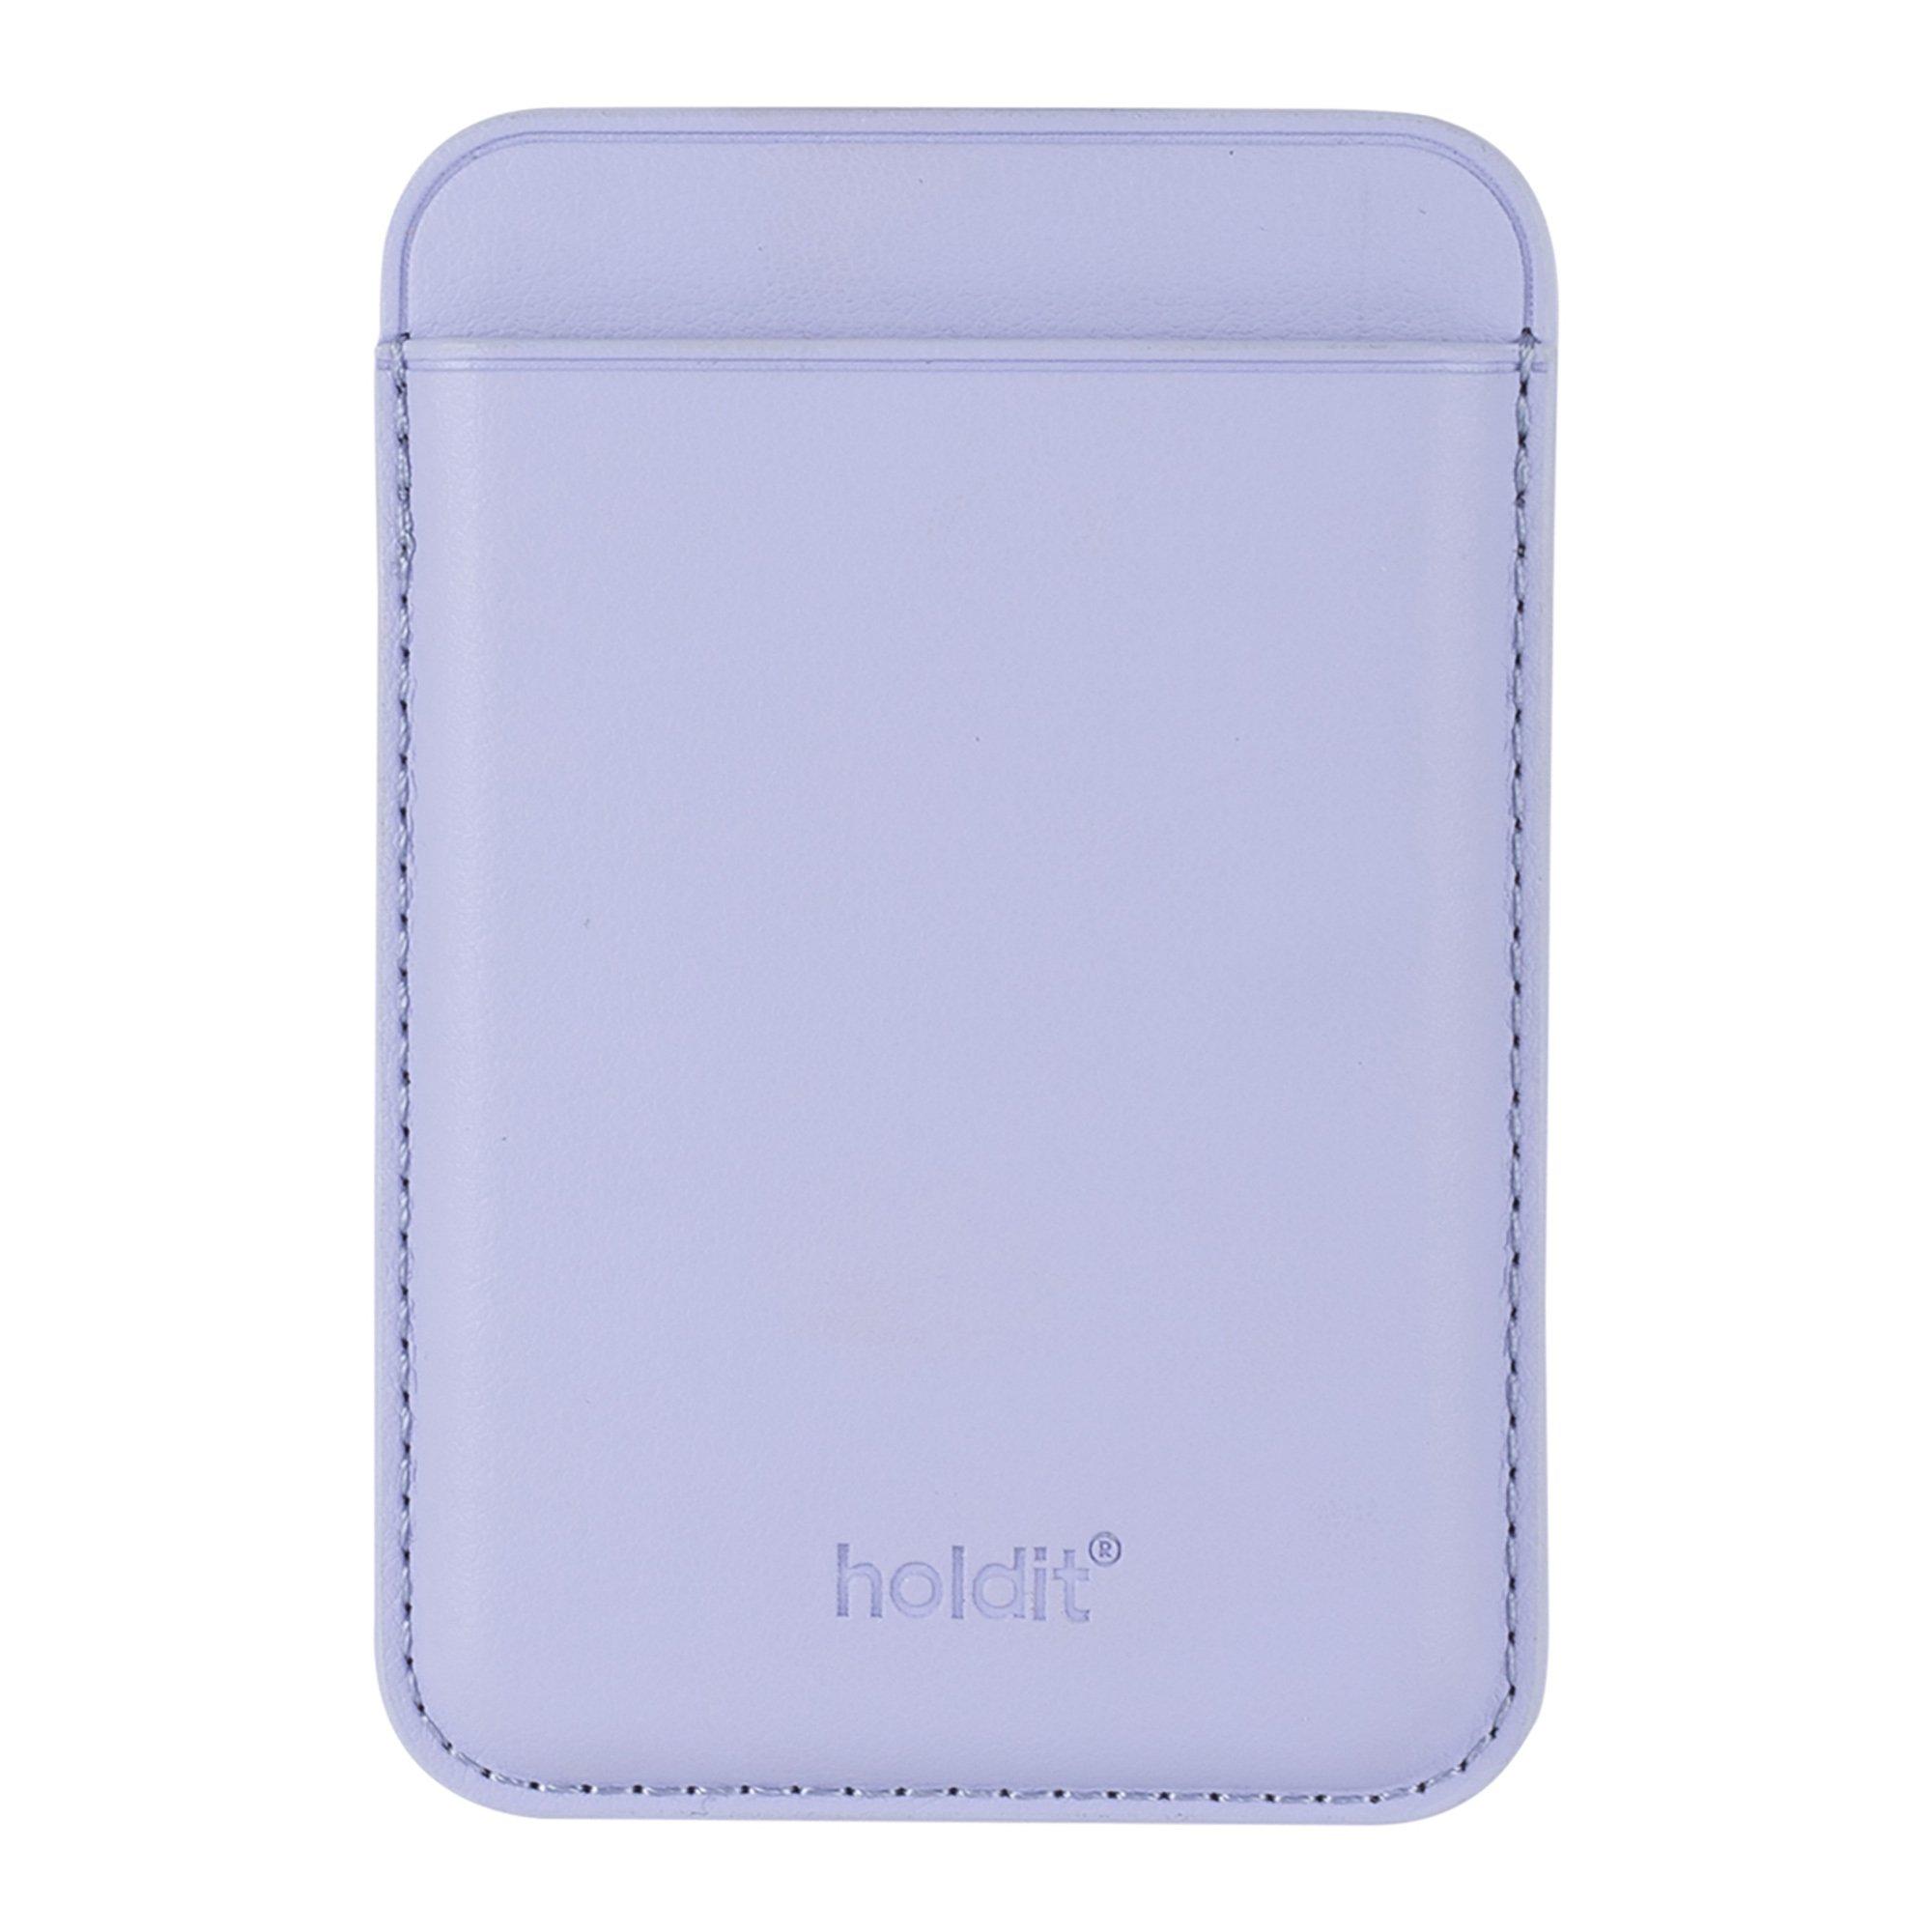 Holdit  Card holder 